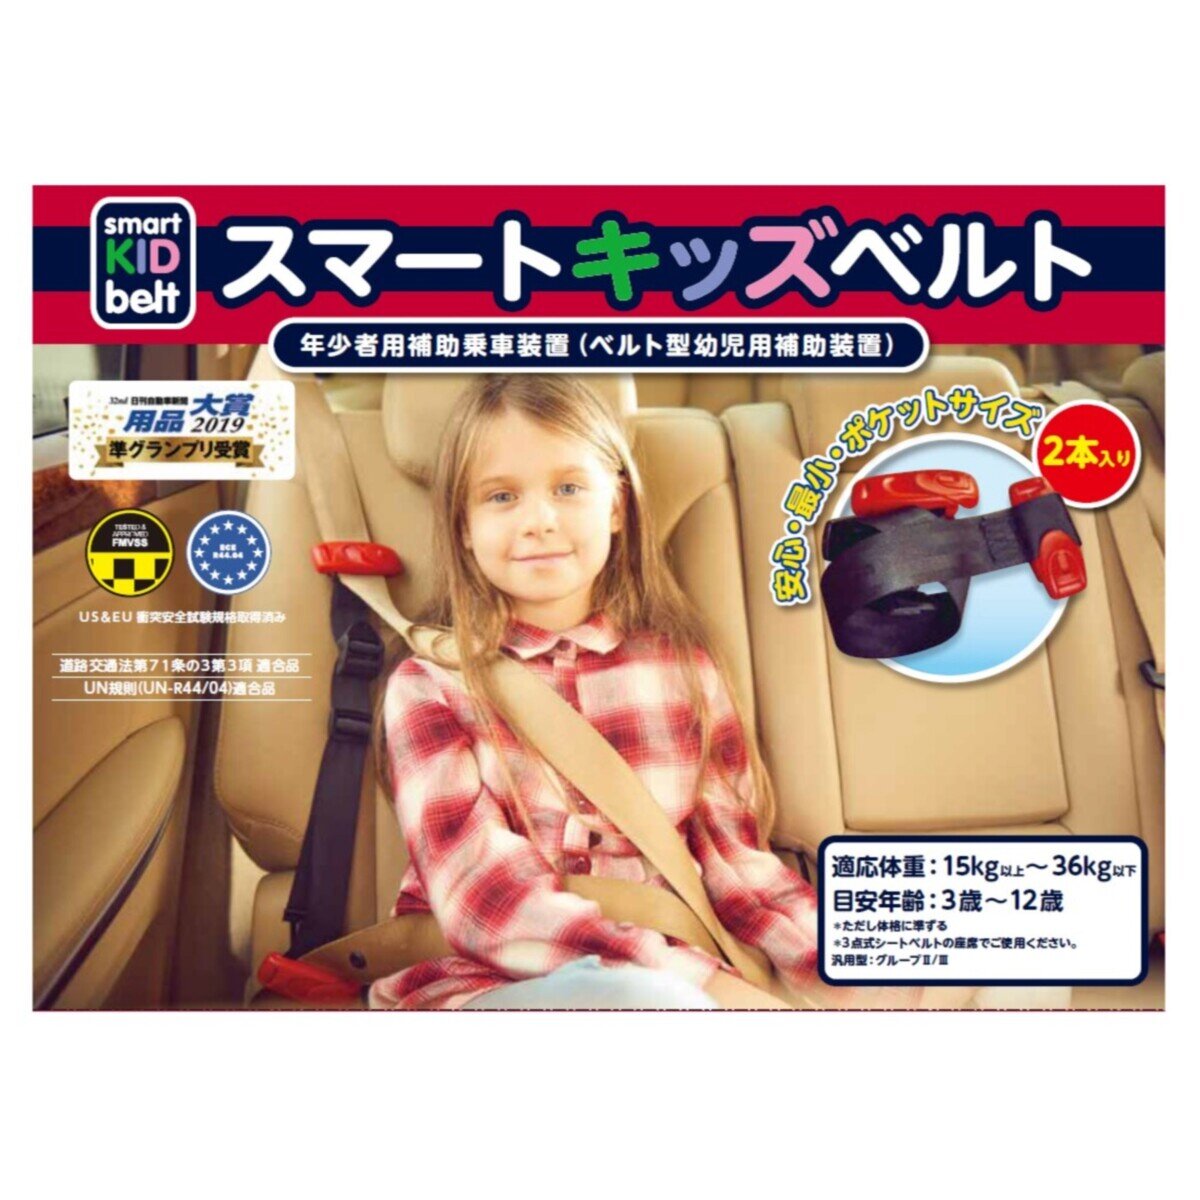 メテオ スマートキッズベルト 2個 携帯子ども用シートベルト Costco Japan